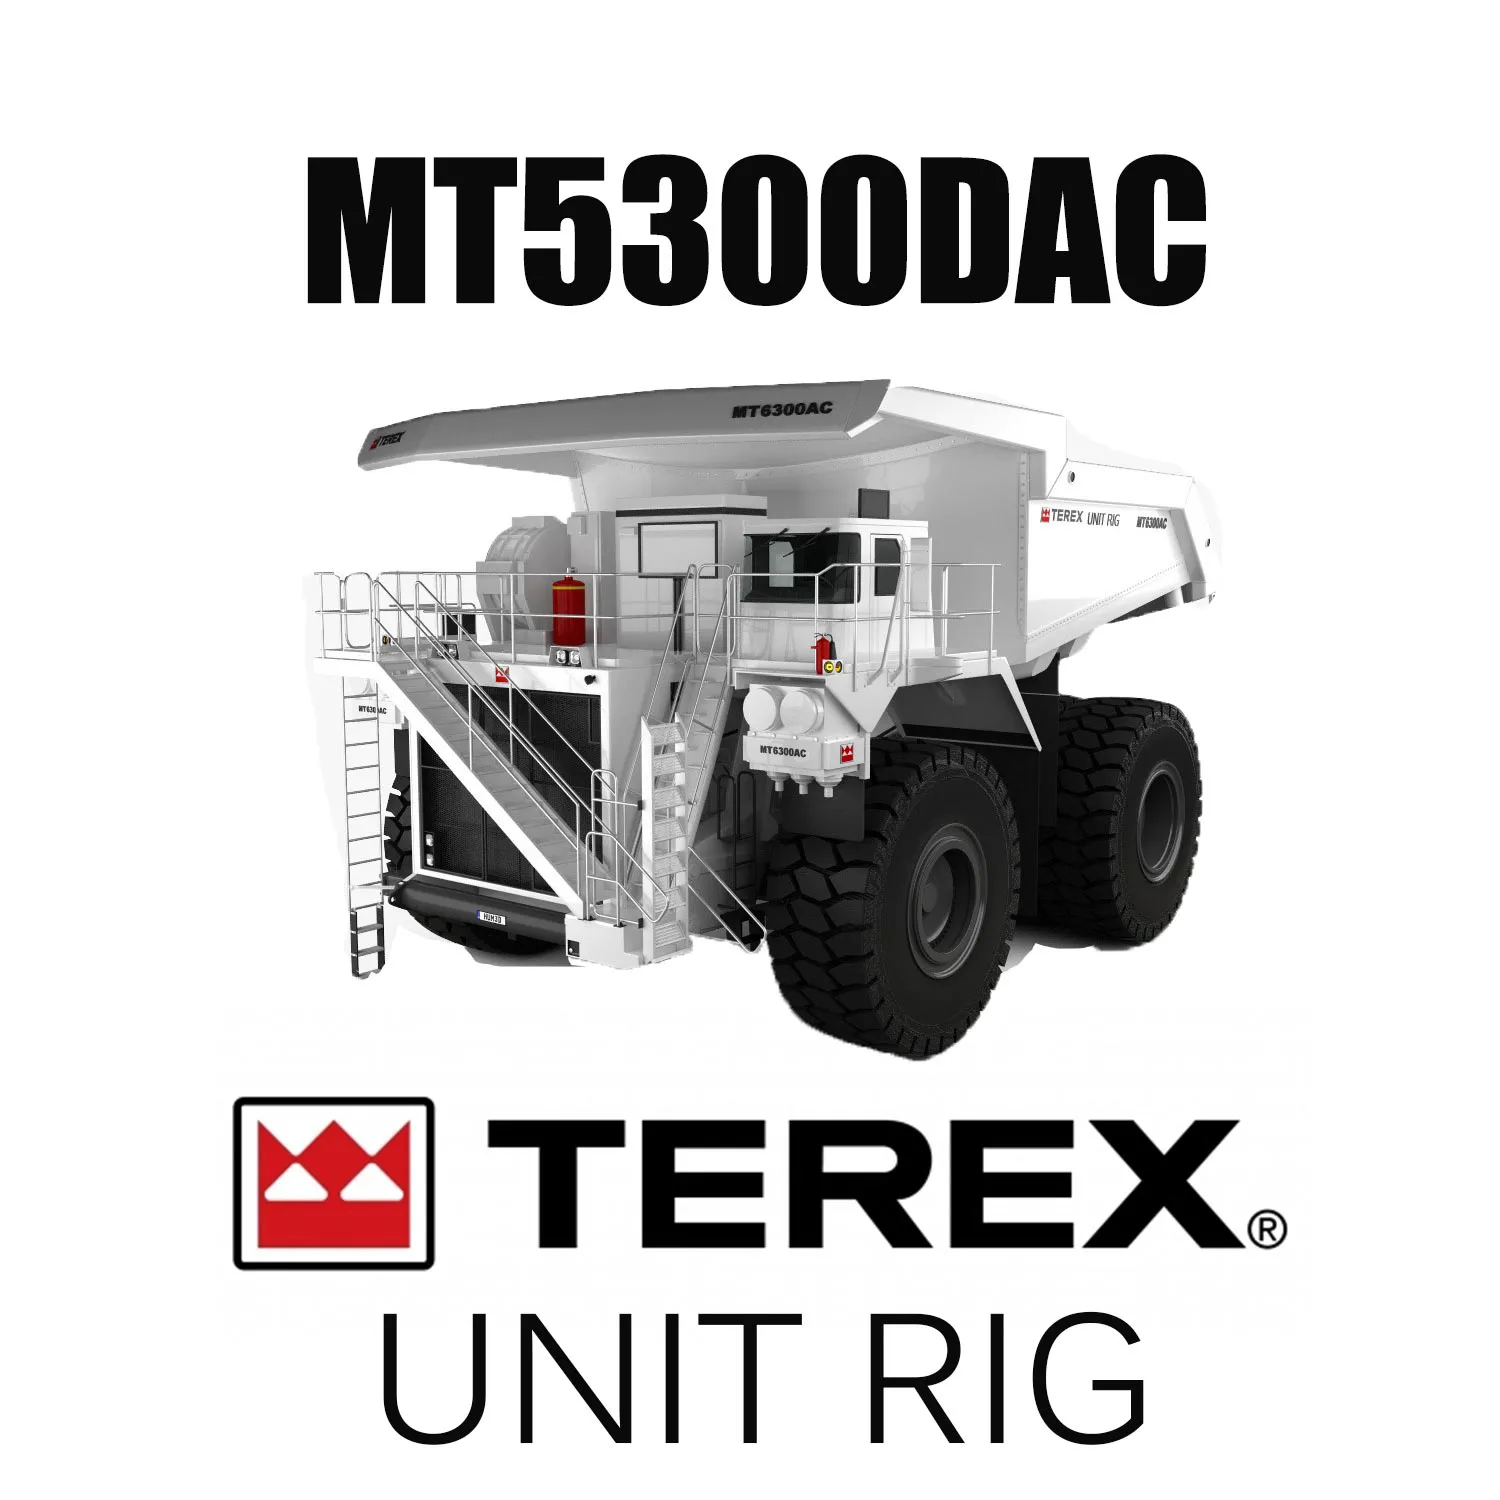 Гигантские 63-дюймовые шины OTR для землеройных машин 53/80R63 для горнодобывающего оборудования UNIT RIG MT5300DAC